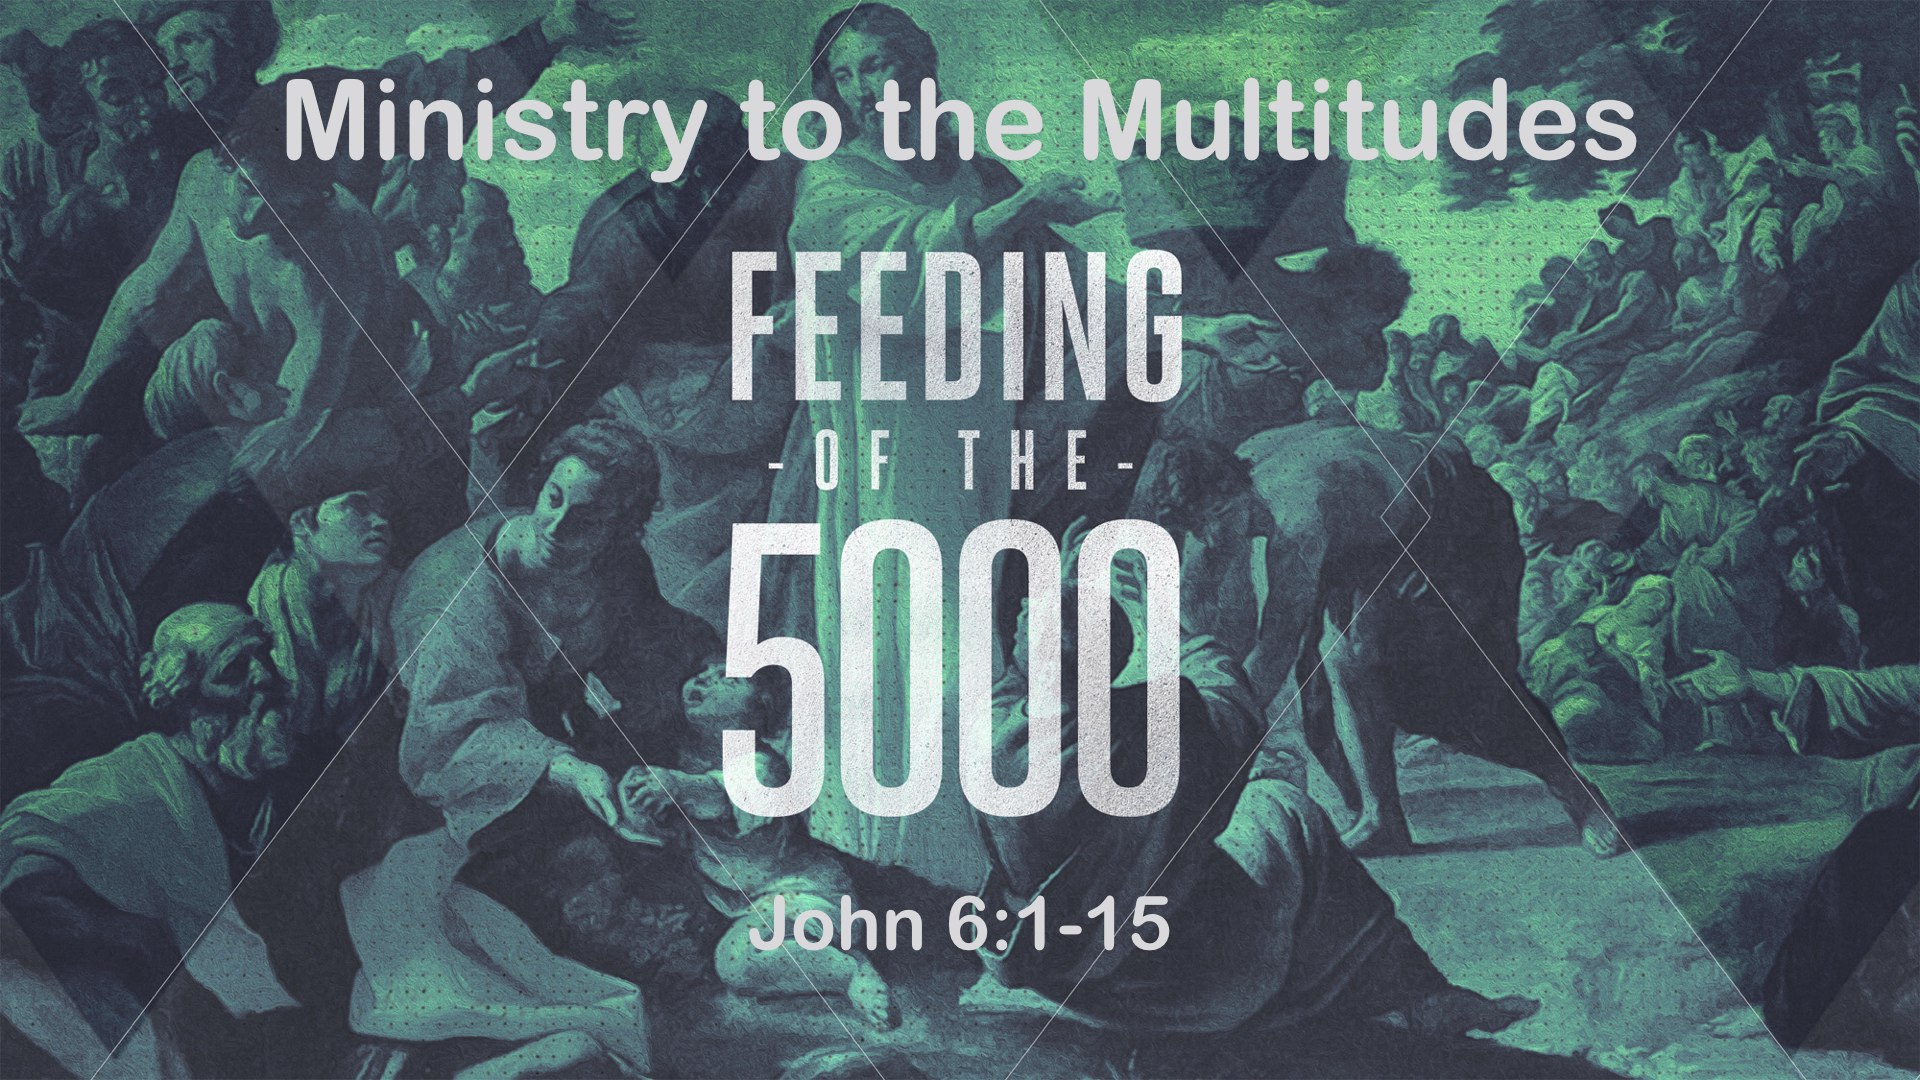 Feeding 5000.jpg.001